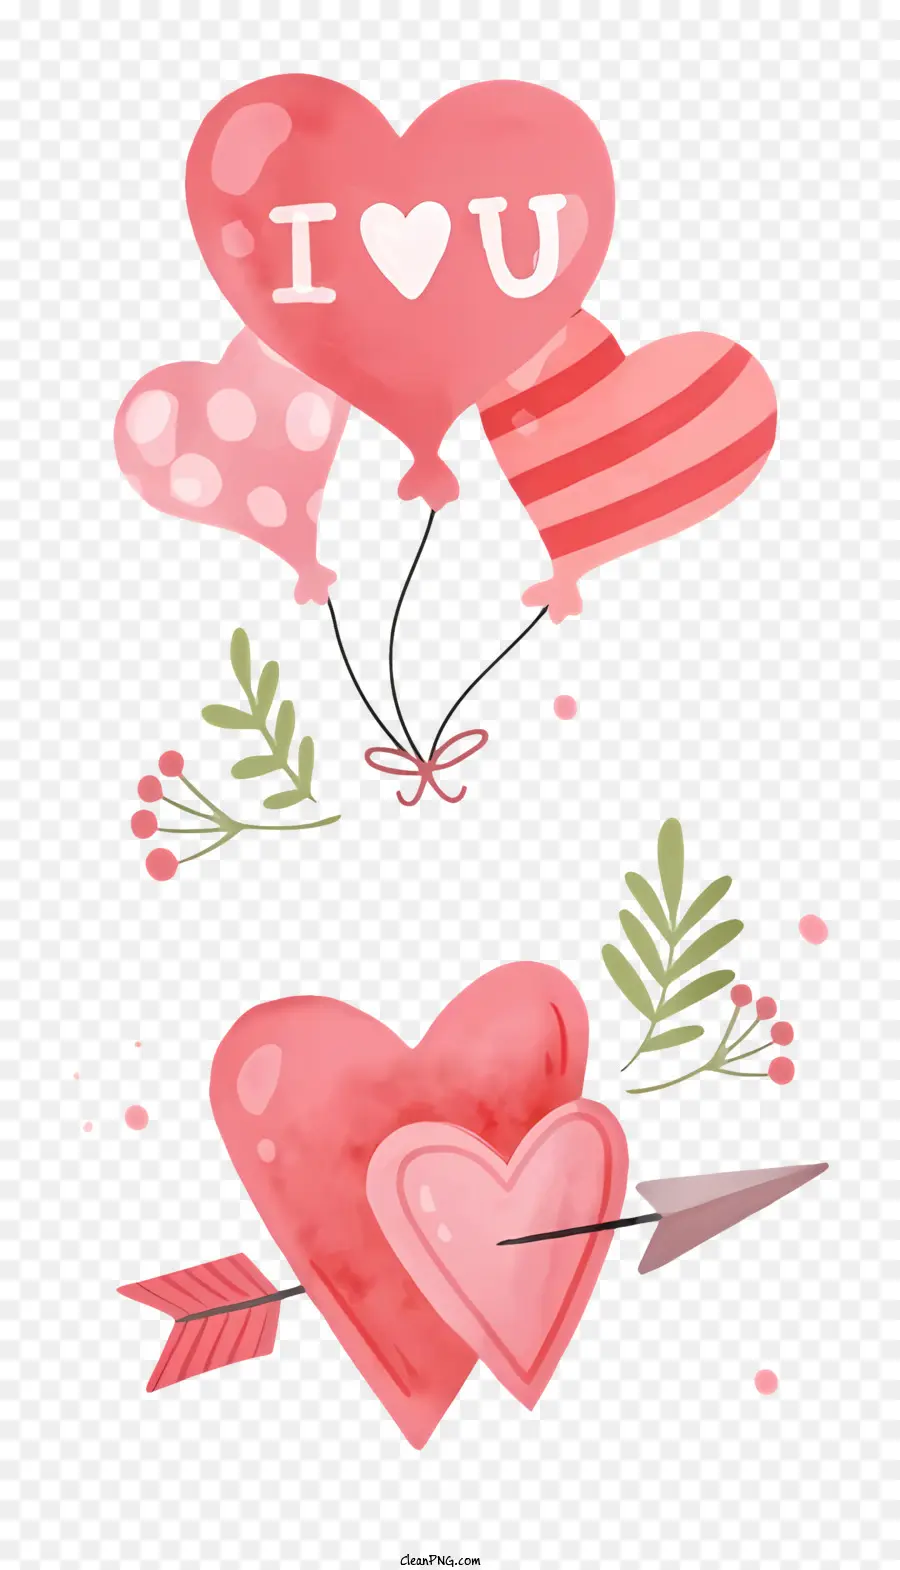 Palloncini rossi - Palloncini colorati a forma di cuore con frecce su sfondo nero